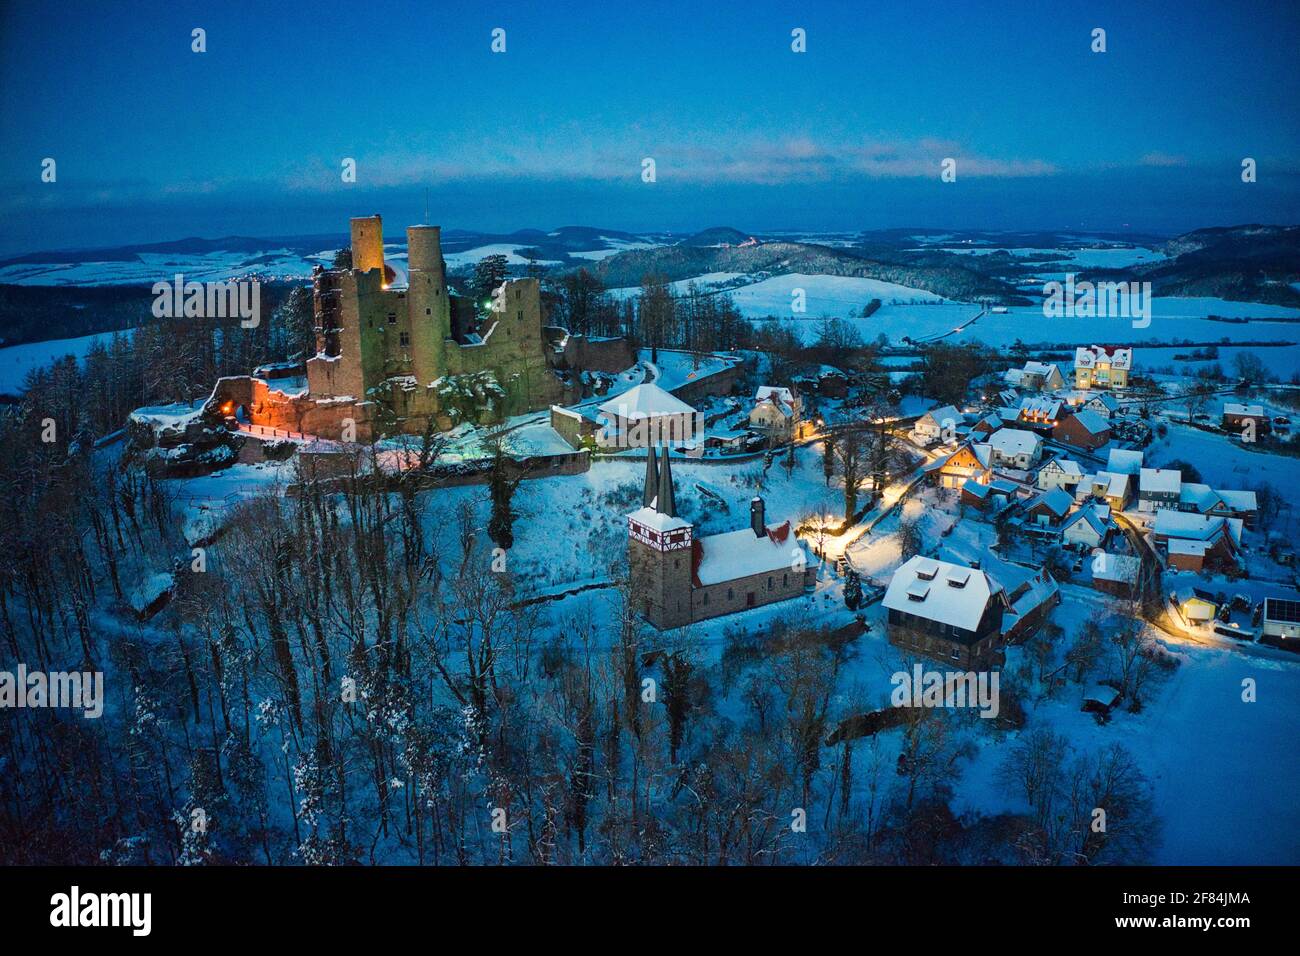 Luftaufnahme von Burg Hanstein und dem Dorf Rimbach im Winter am Abend mit Beleuchtung Stock Photo